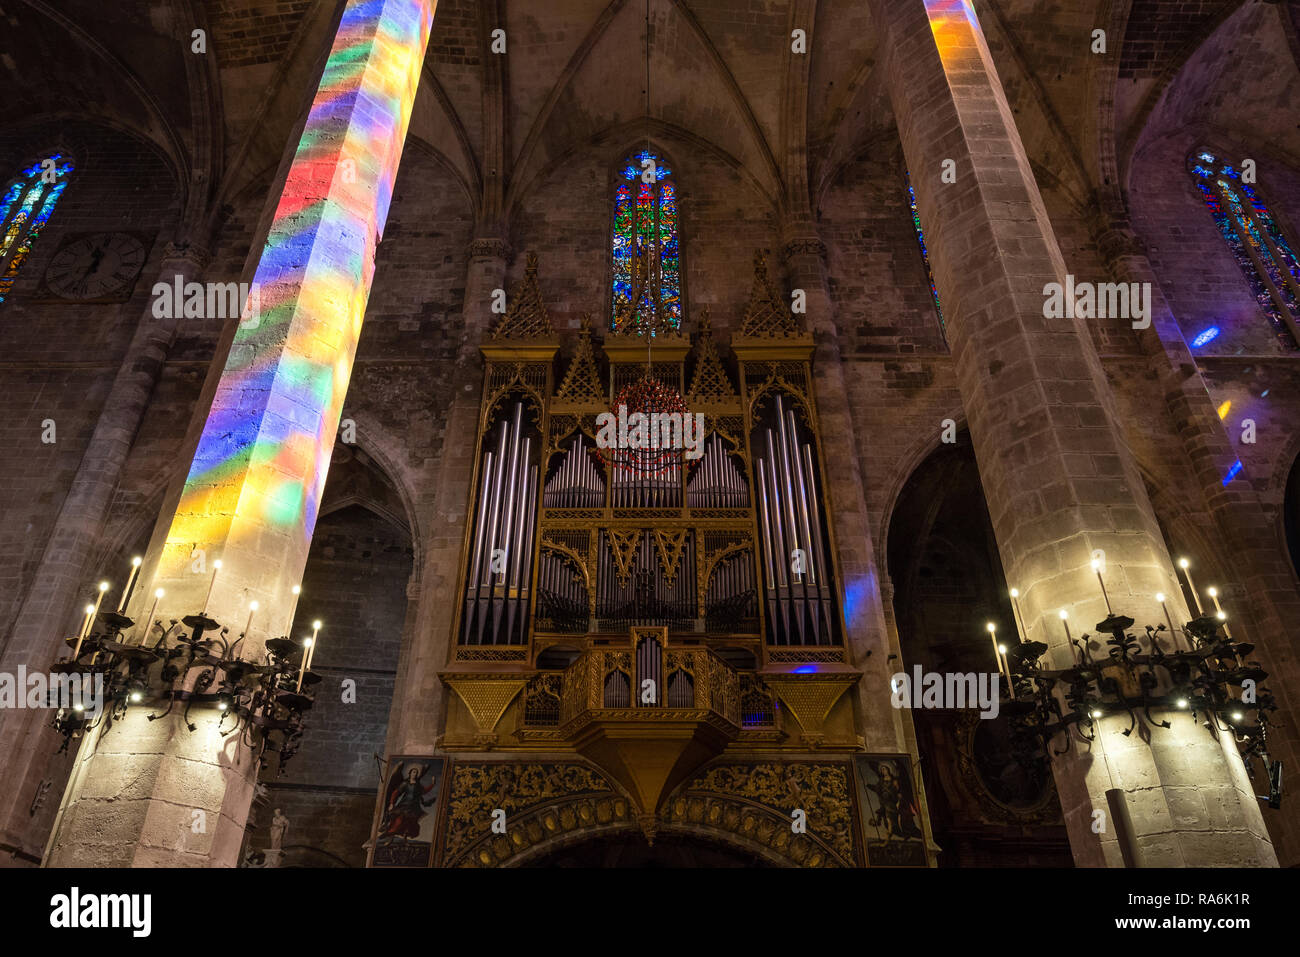 PALMA DE MALLORCA, Spagna - 30 SETT 2018: vista interna della Cattedrale di Santa Maria di Palma (La Seu) in Palma de Mallorca, Spagna Foto Stock